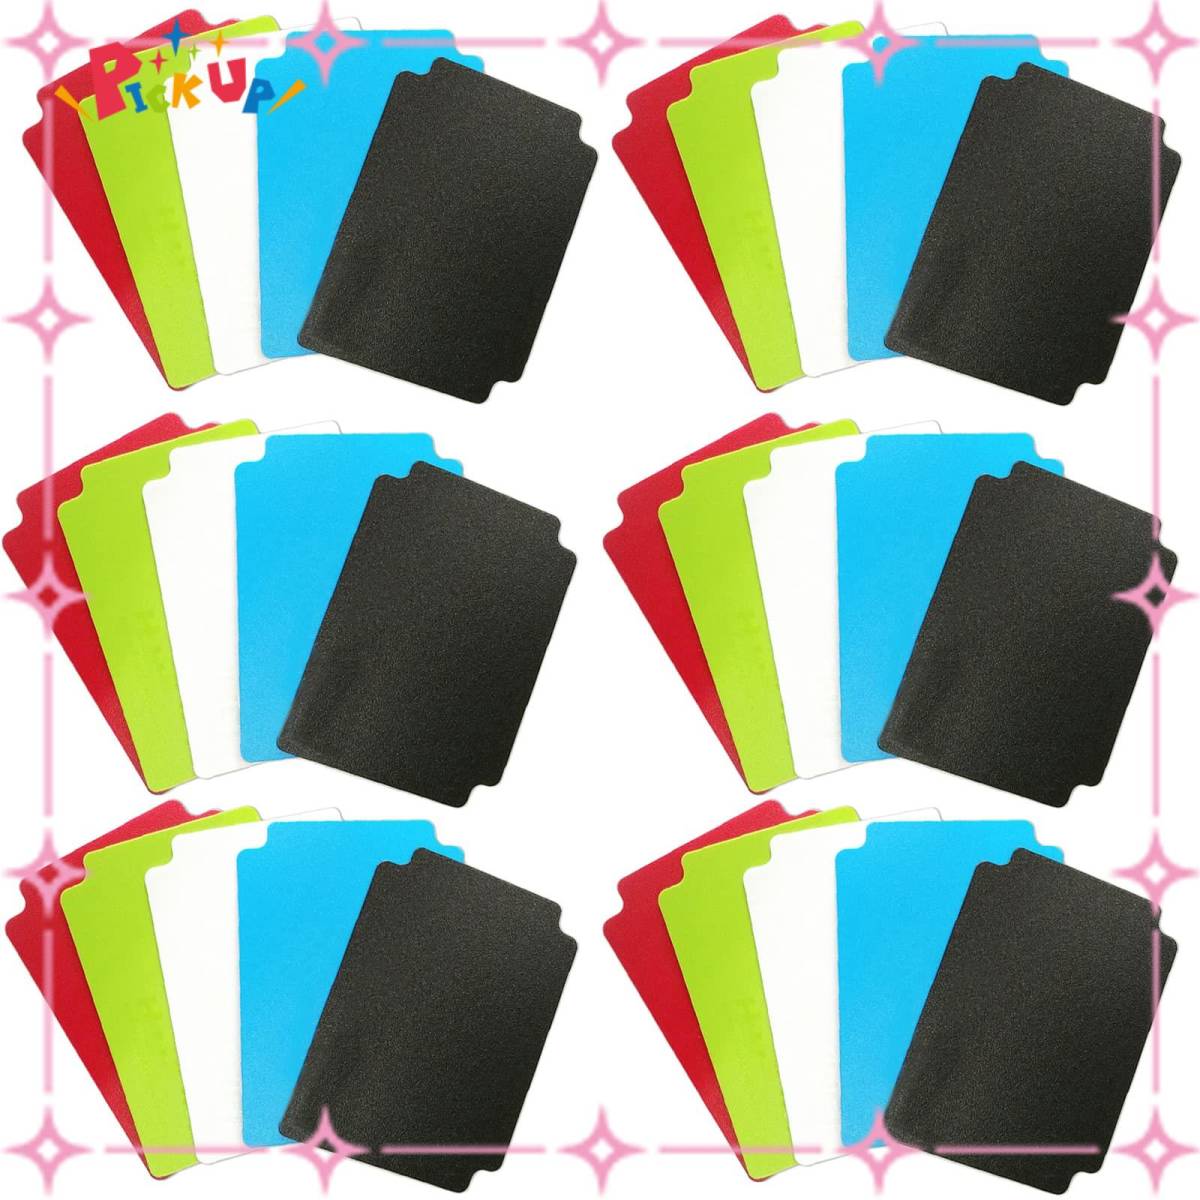 【人気商品】サムコス カードセパレーター 5色 30枚セット 仕切り デッキケース 整理 仕分けに最適 収納 カードゲーム カード_画像1